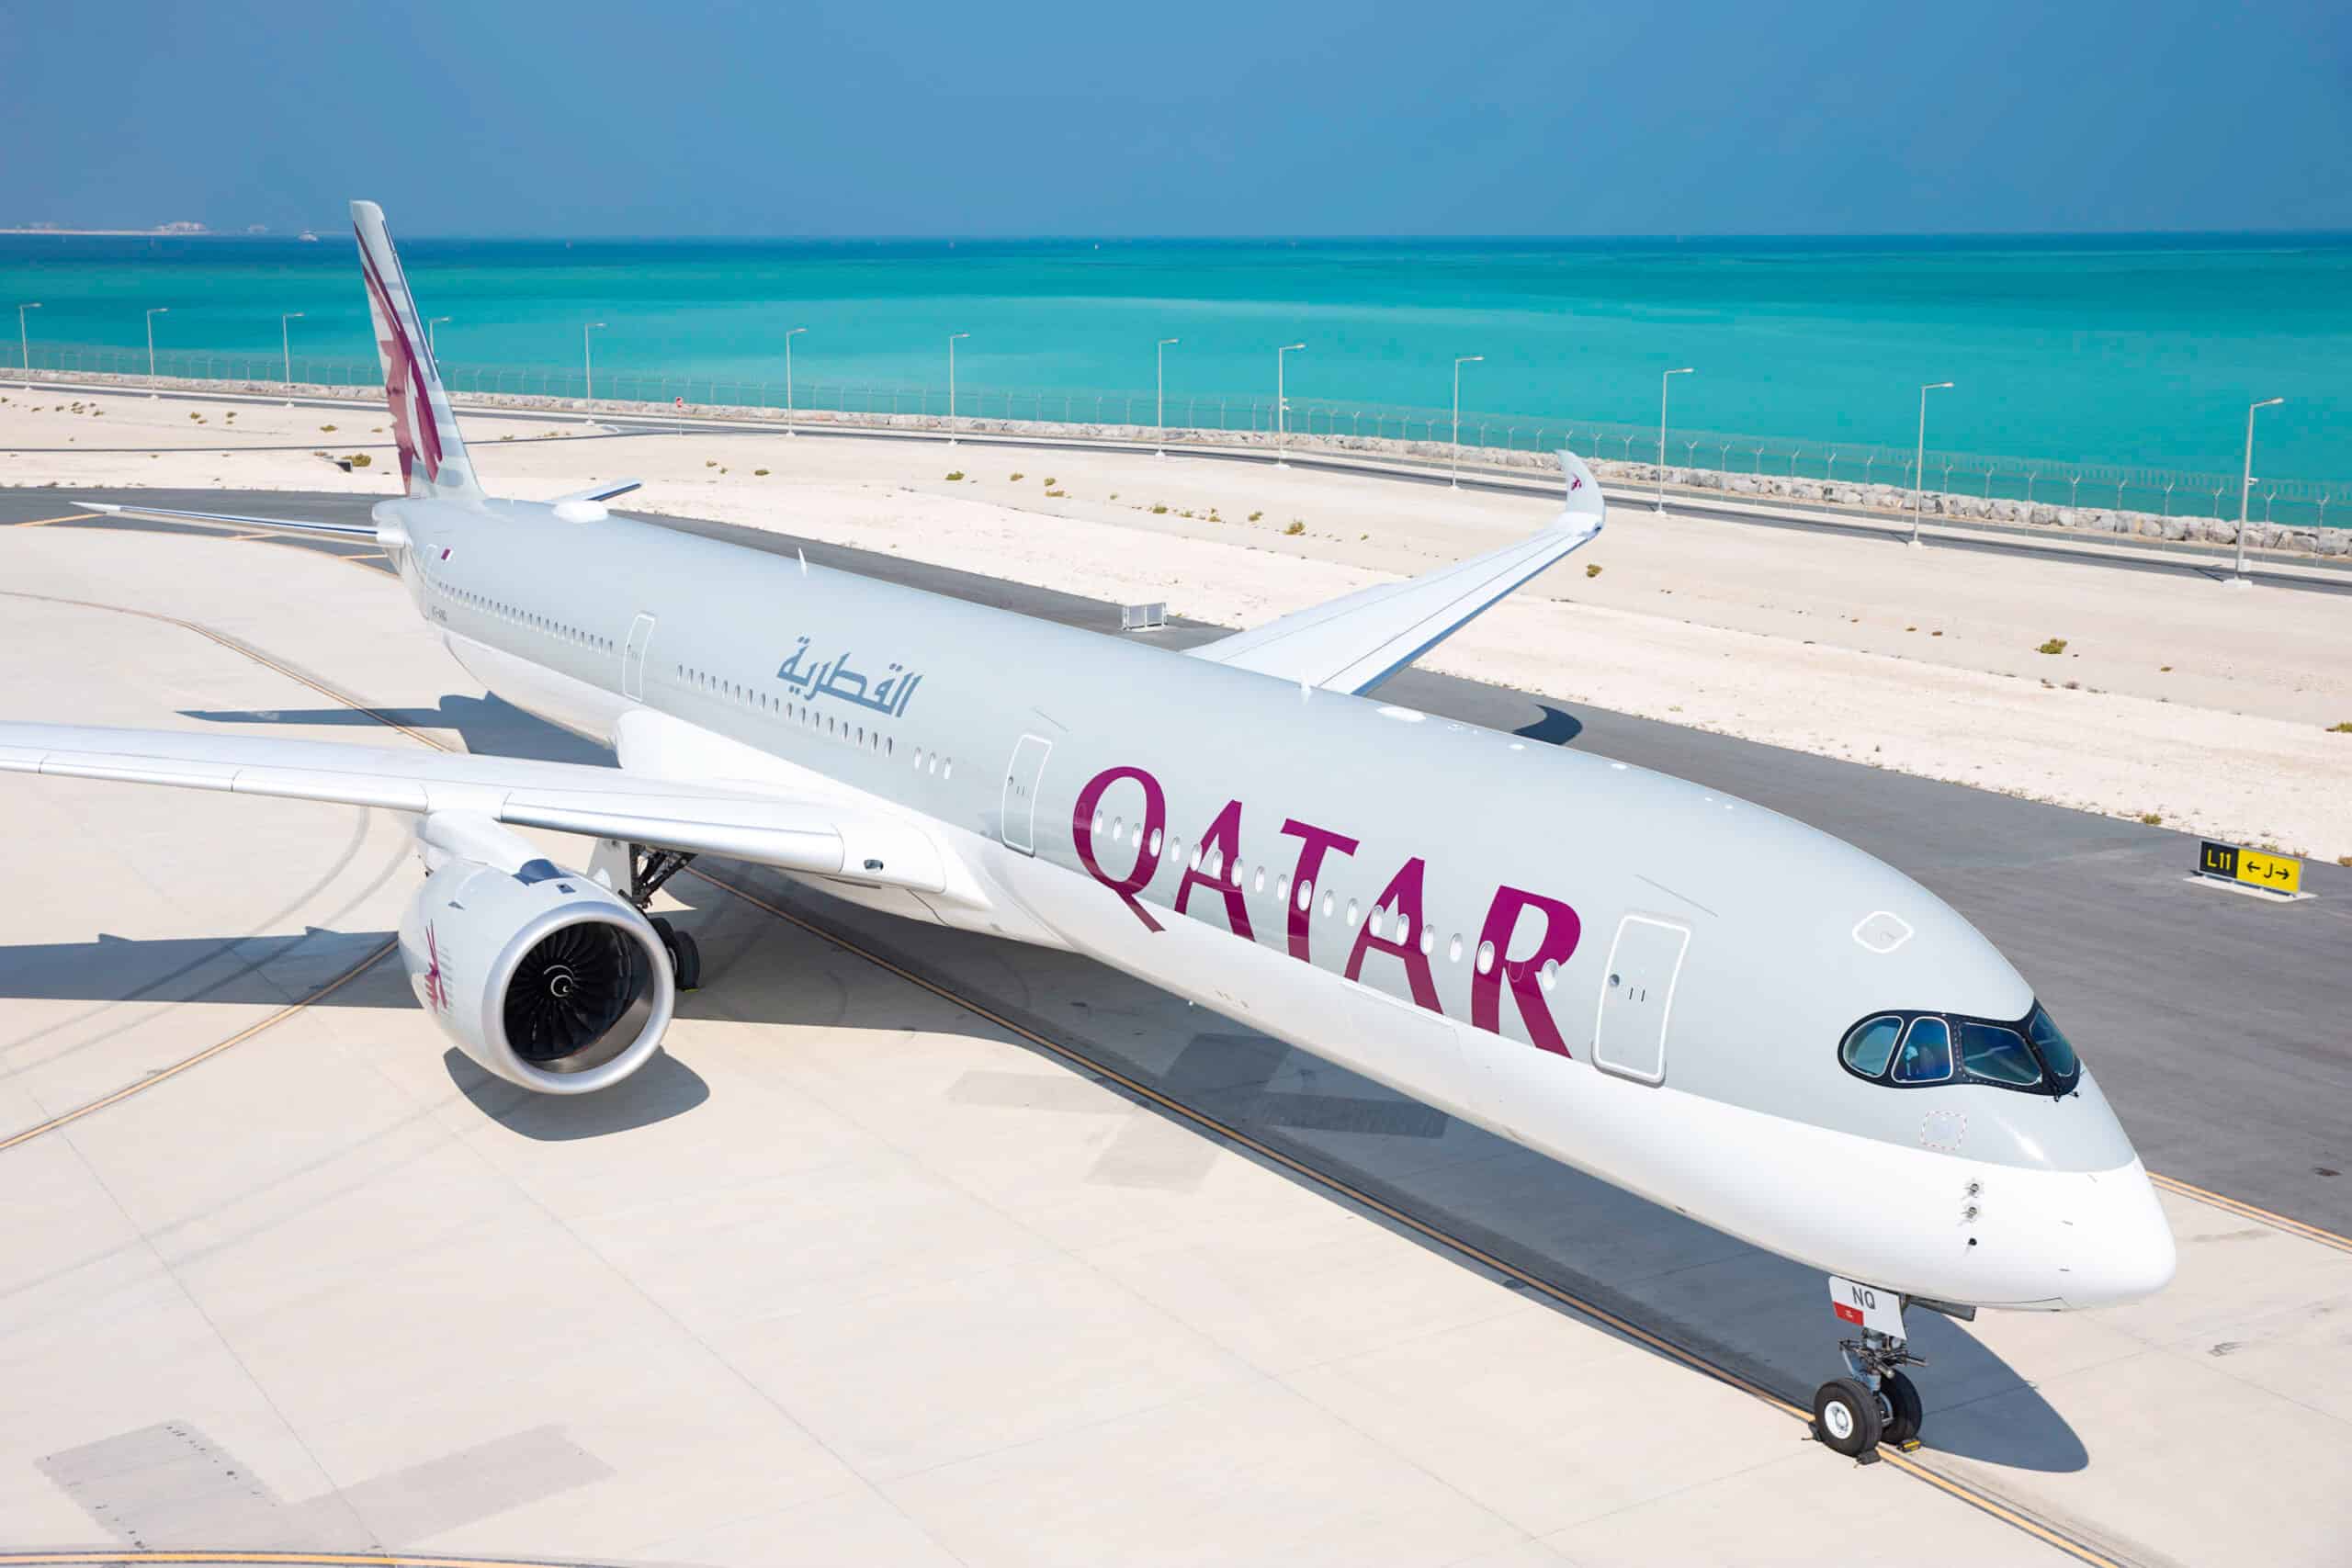 Qatar on Runway